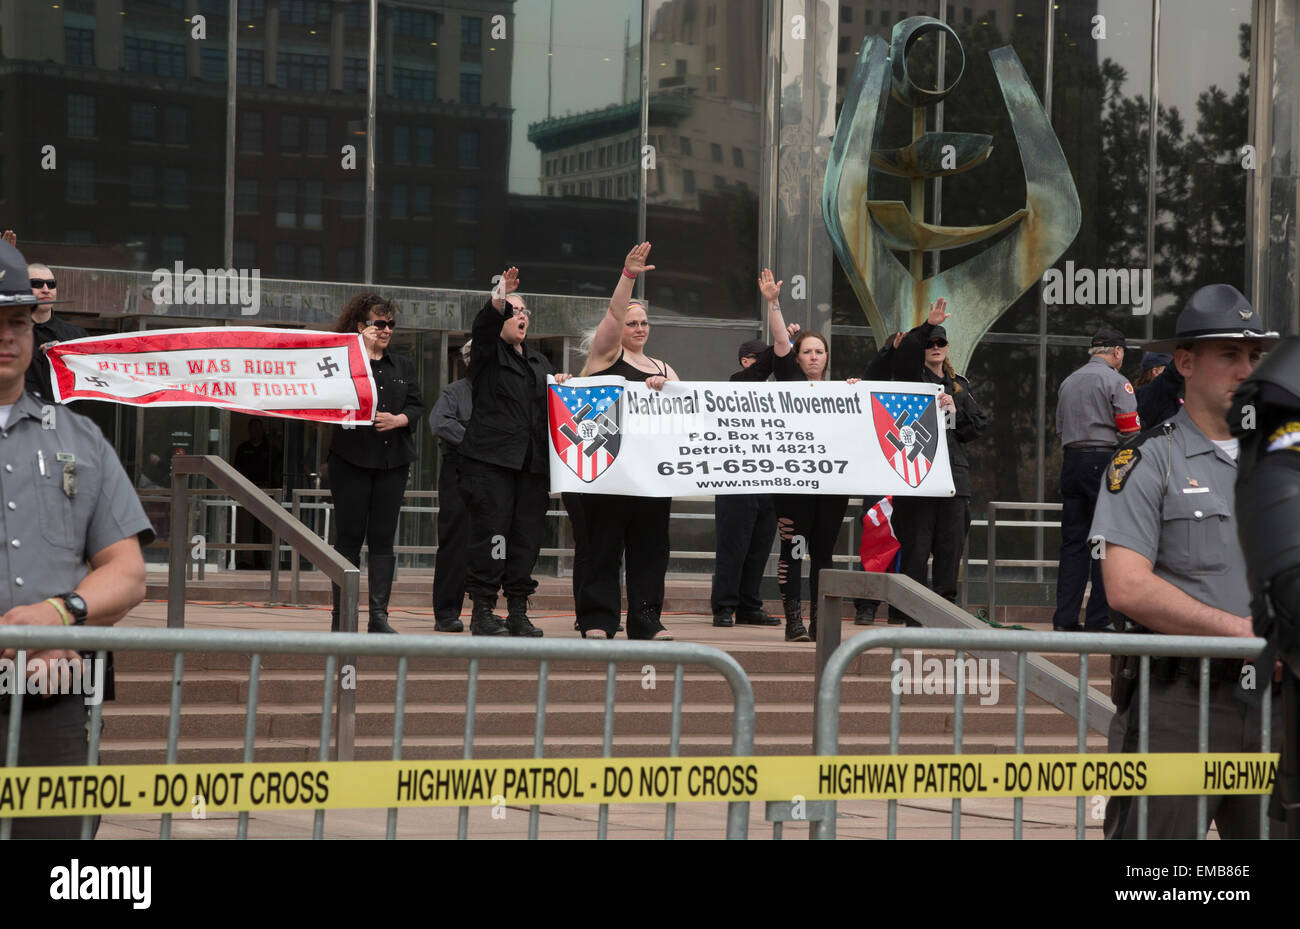 Toledo, Ohio USA - 18 avril 2015 - protégé par des centaines de policiers néo-nazi, le Mouvement national-socialiste a tenu un rassemblement sur les marches de l'immeuble de bureaux du gouvernement. Plusieurs centaines de personnes se sont rendues à protester contre les Nazis. Crédit : Jim West/Alamy Live News Banque D'Images